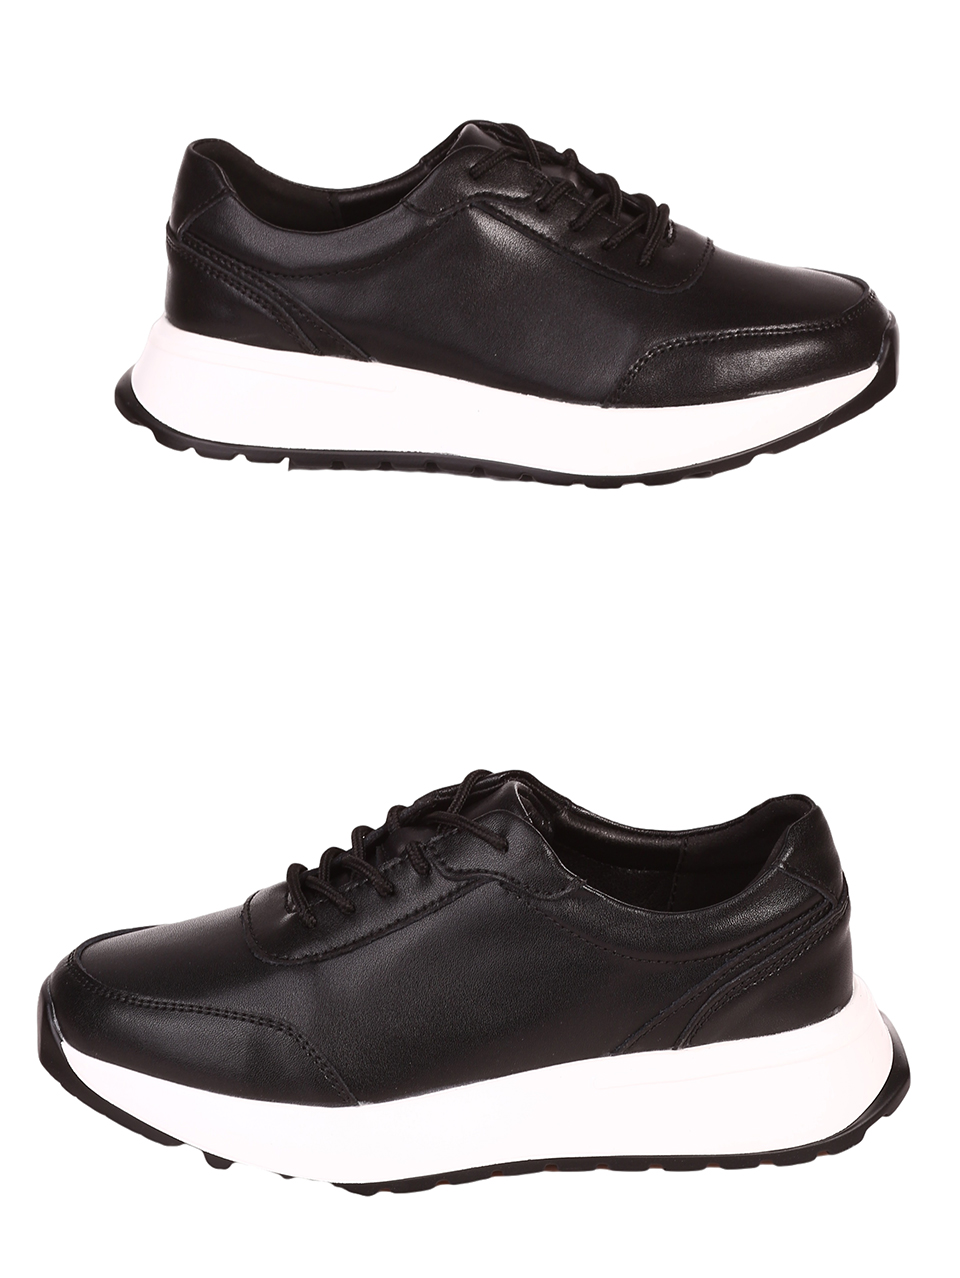 Ежедневни дамски обувки от естествена кожа в черно 3AF-23646 black